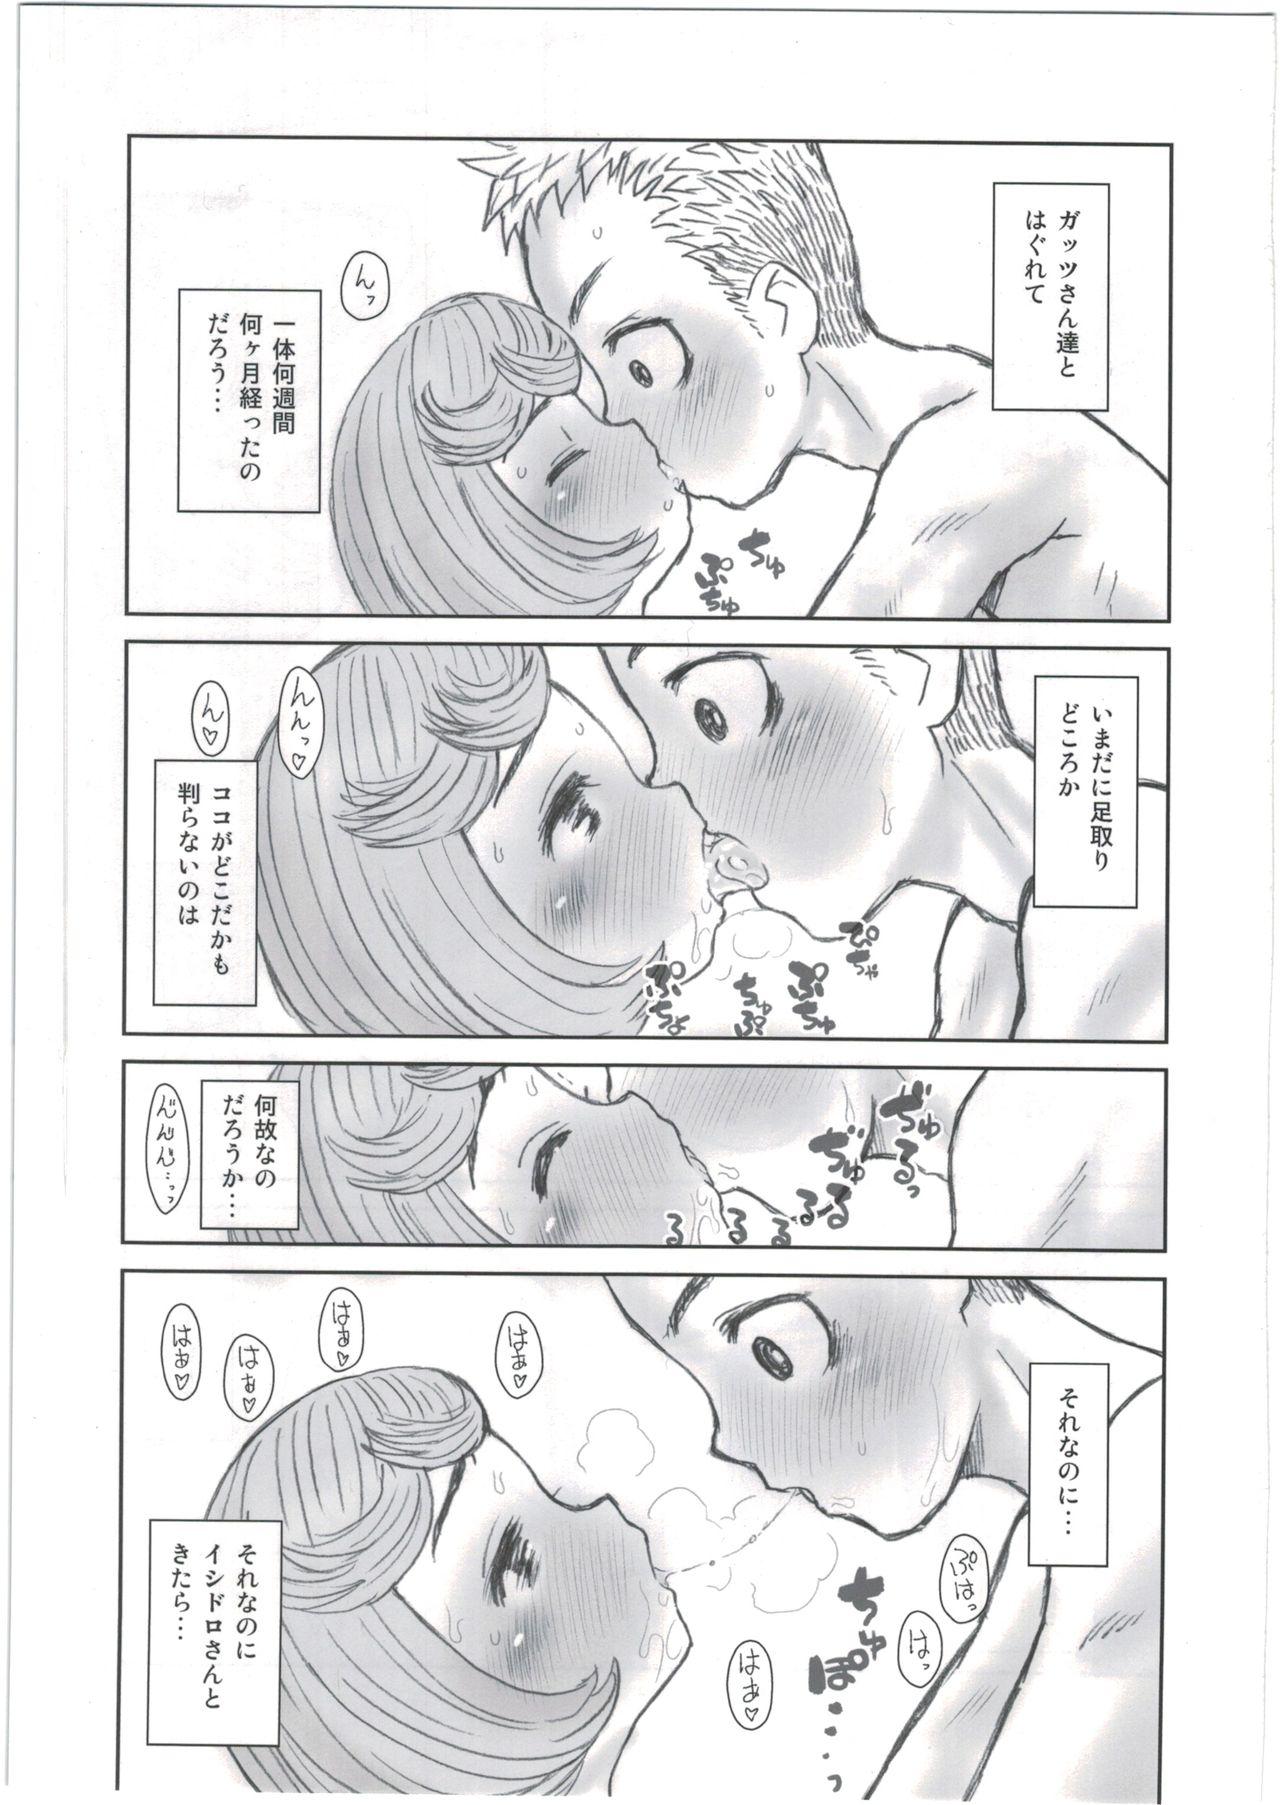 Classy Hinnyuu Musume 35 - Berserk Puto - Page 5